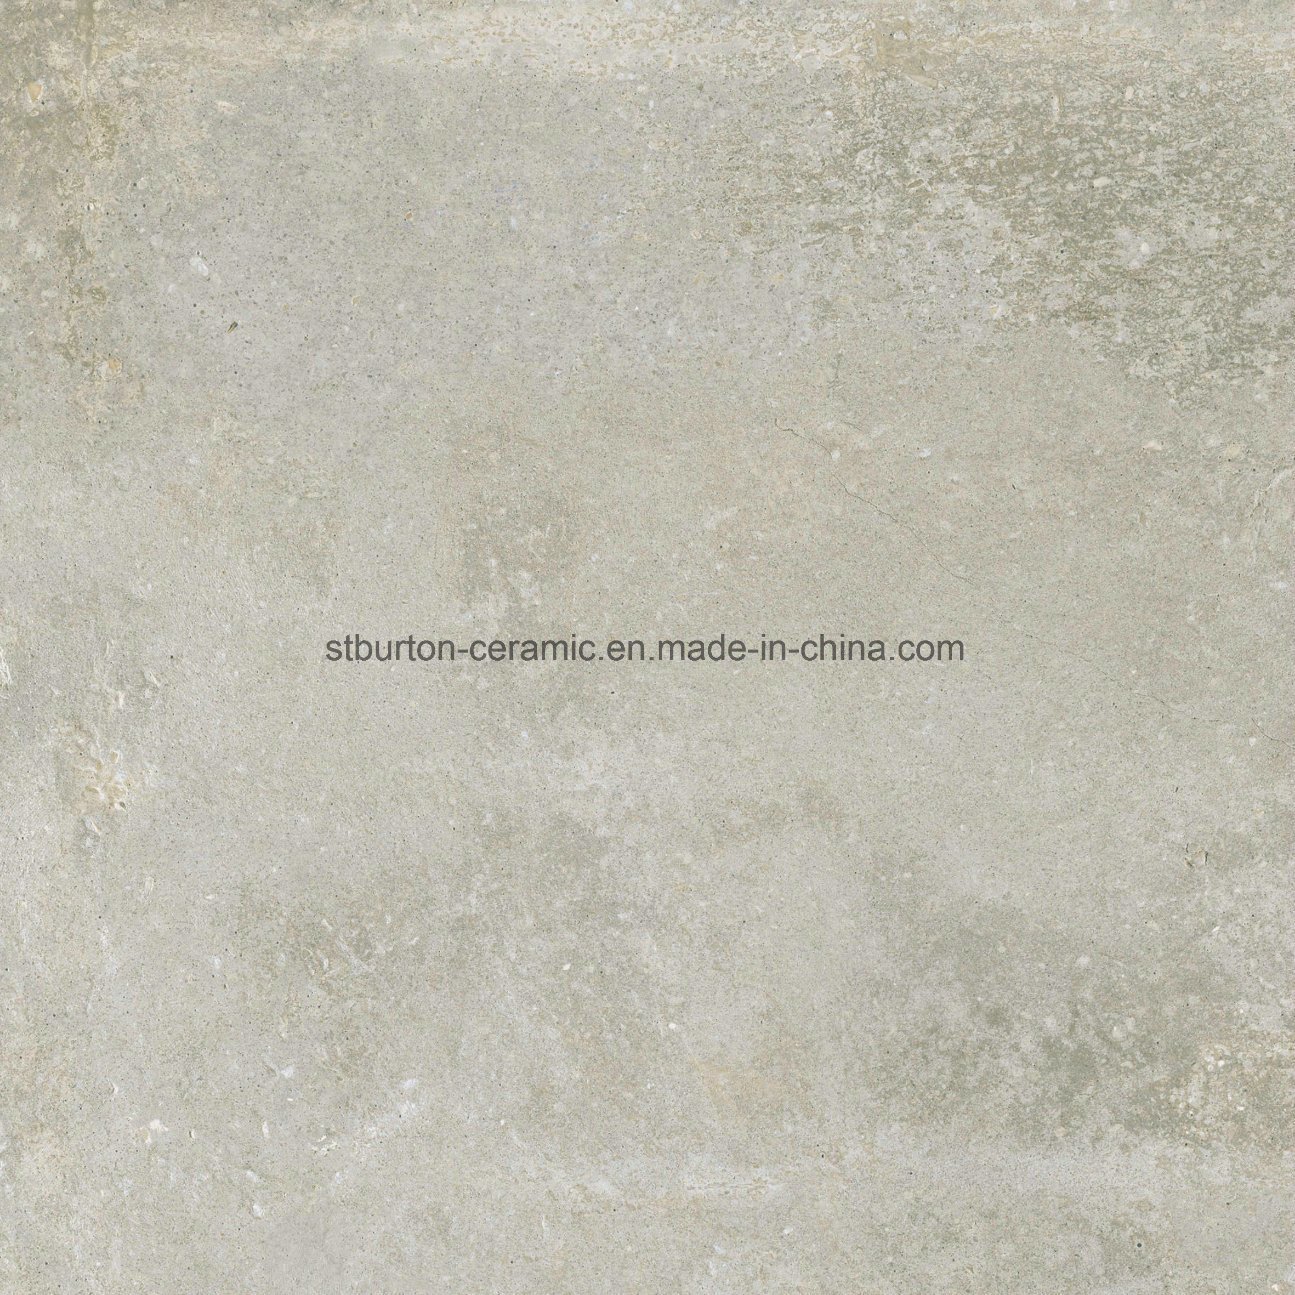 Building Material Matt Rustic Porcelain Floor Tile Grey Color Cement Design 600X600mm St66567-1